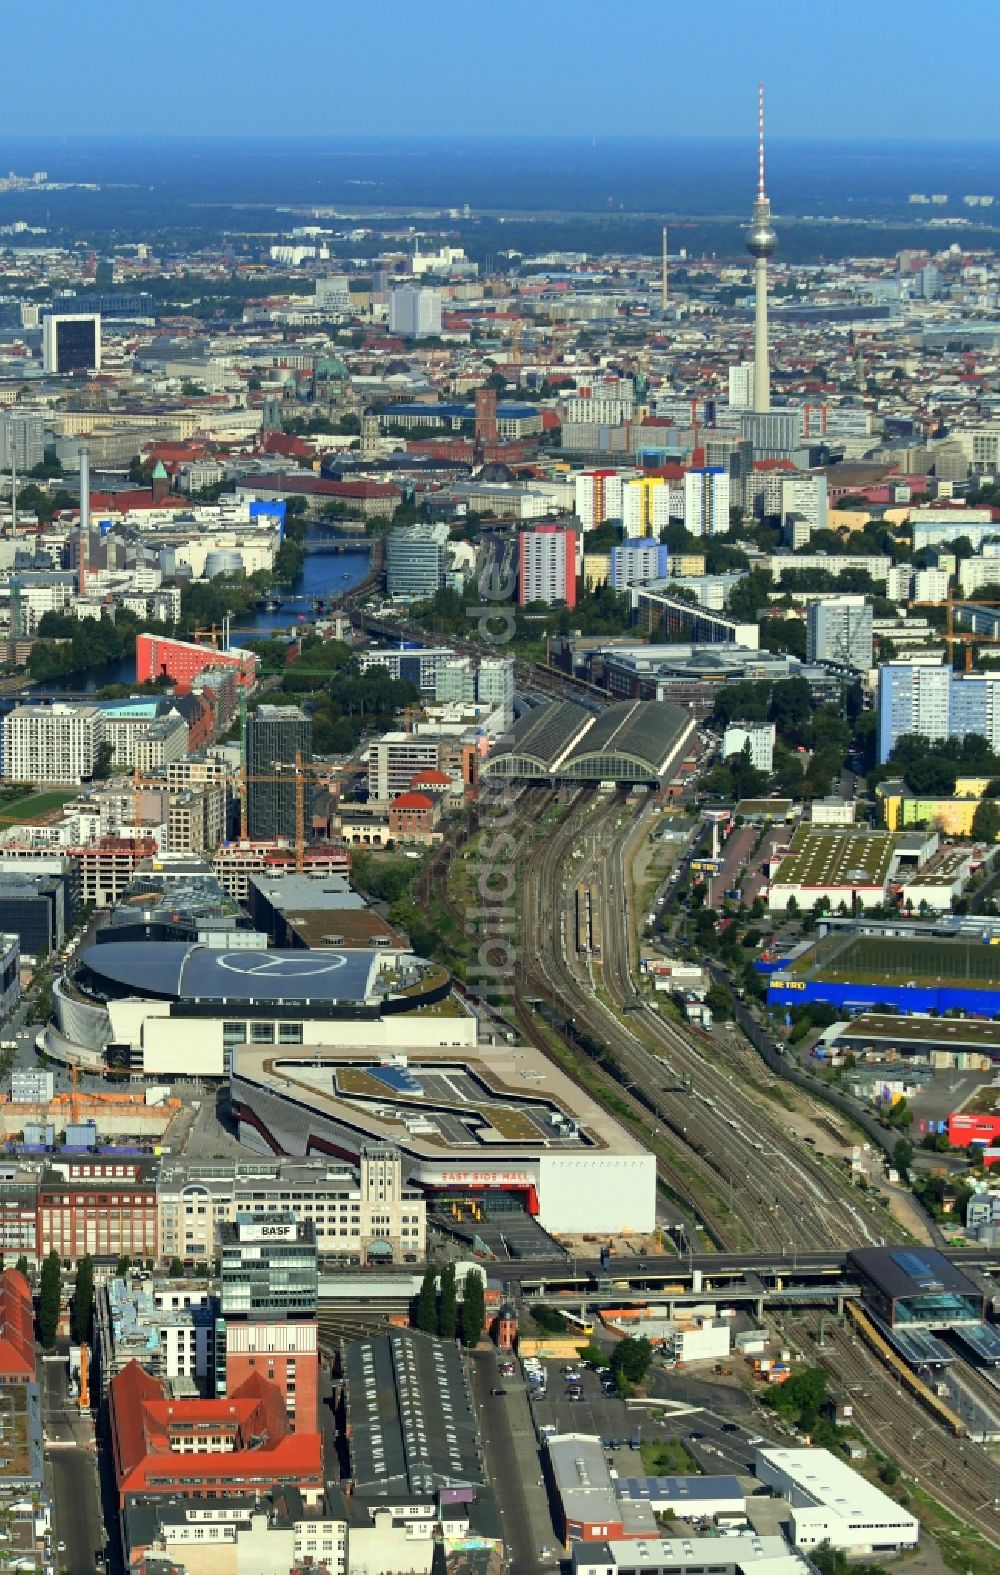 Luftbild Berlin - Neubau des Gebäudekomplexes des Einkaufszentrum East Side Mall auf dem Anschutz - Areal im Friedrichshain in Berlin, Deutschland